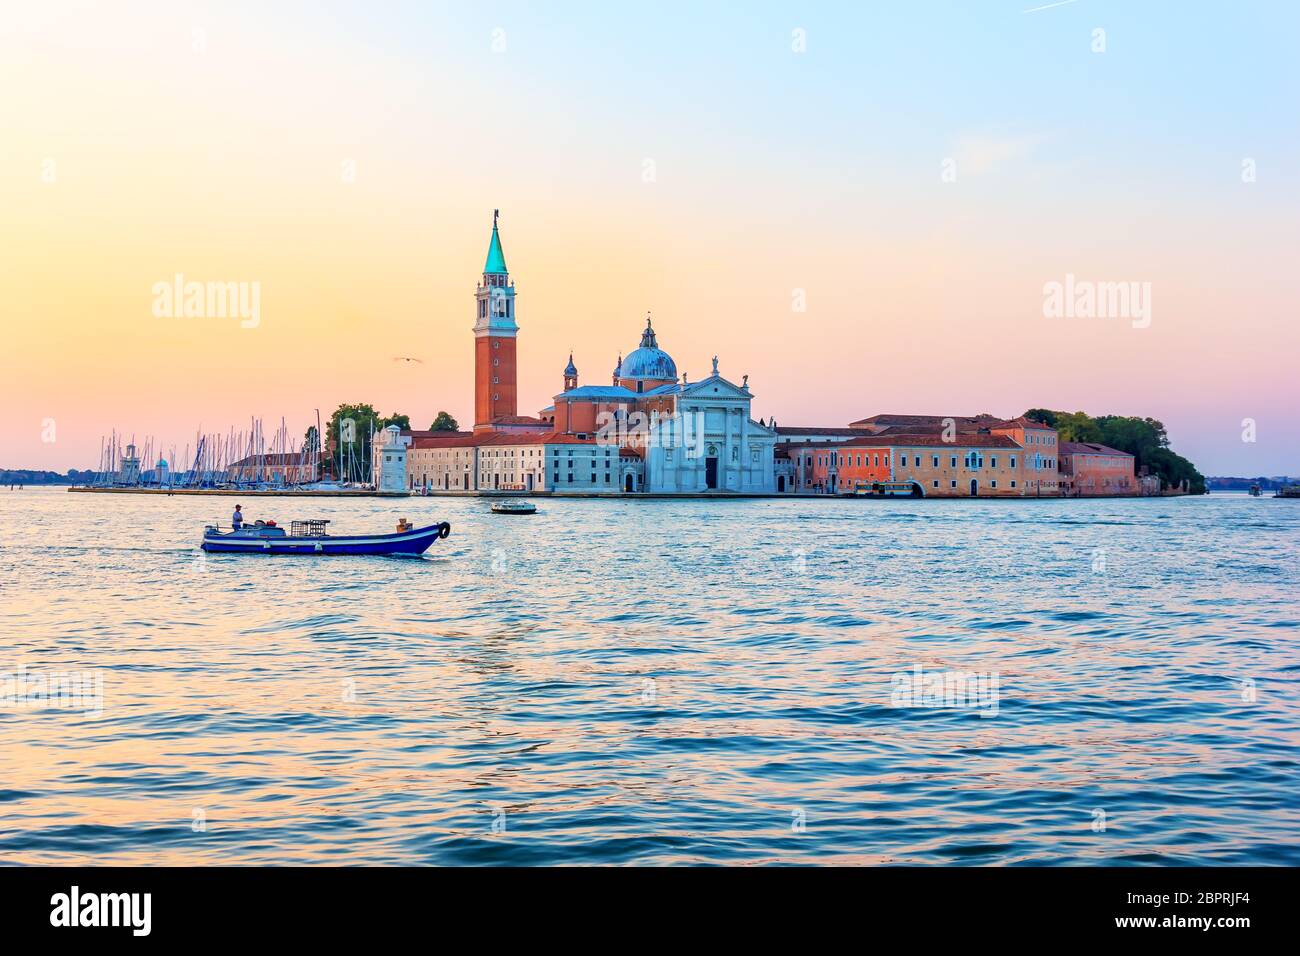 San Giorgio Maggiore in Venice at sunrise, Italy. Stock Photo